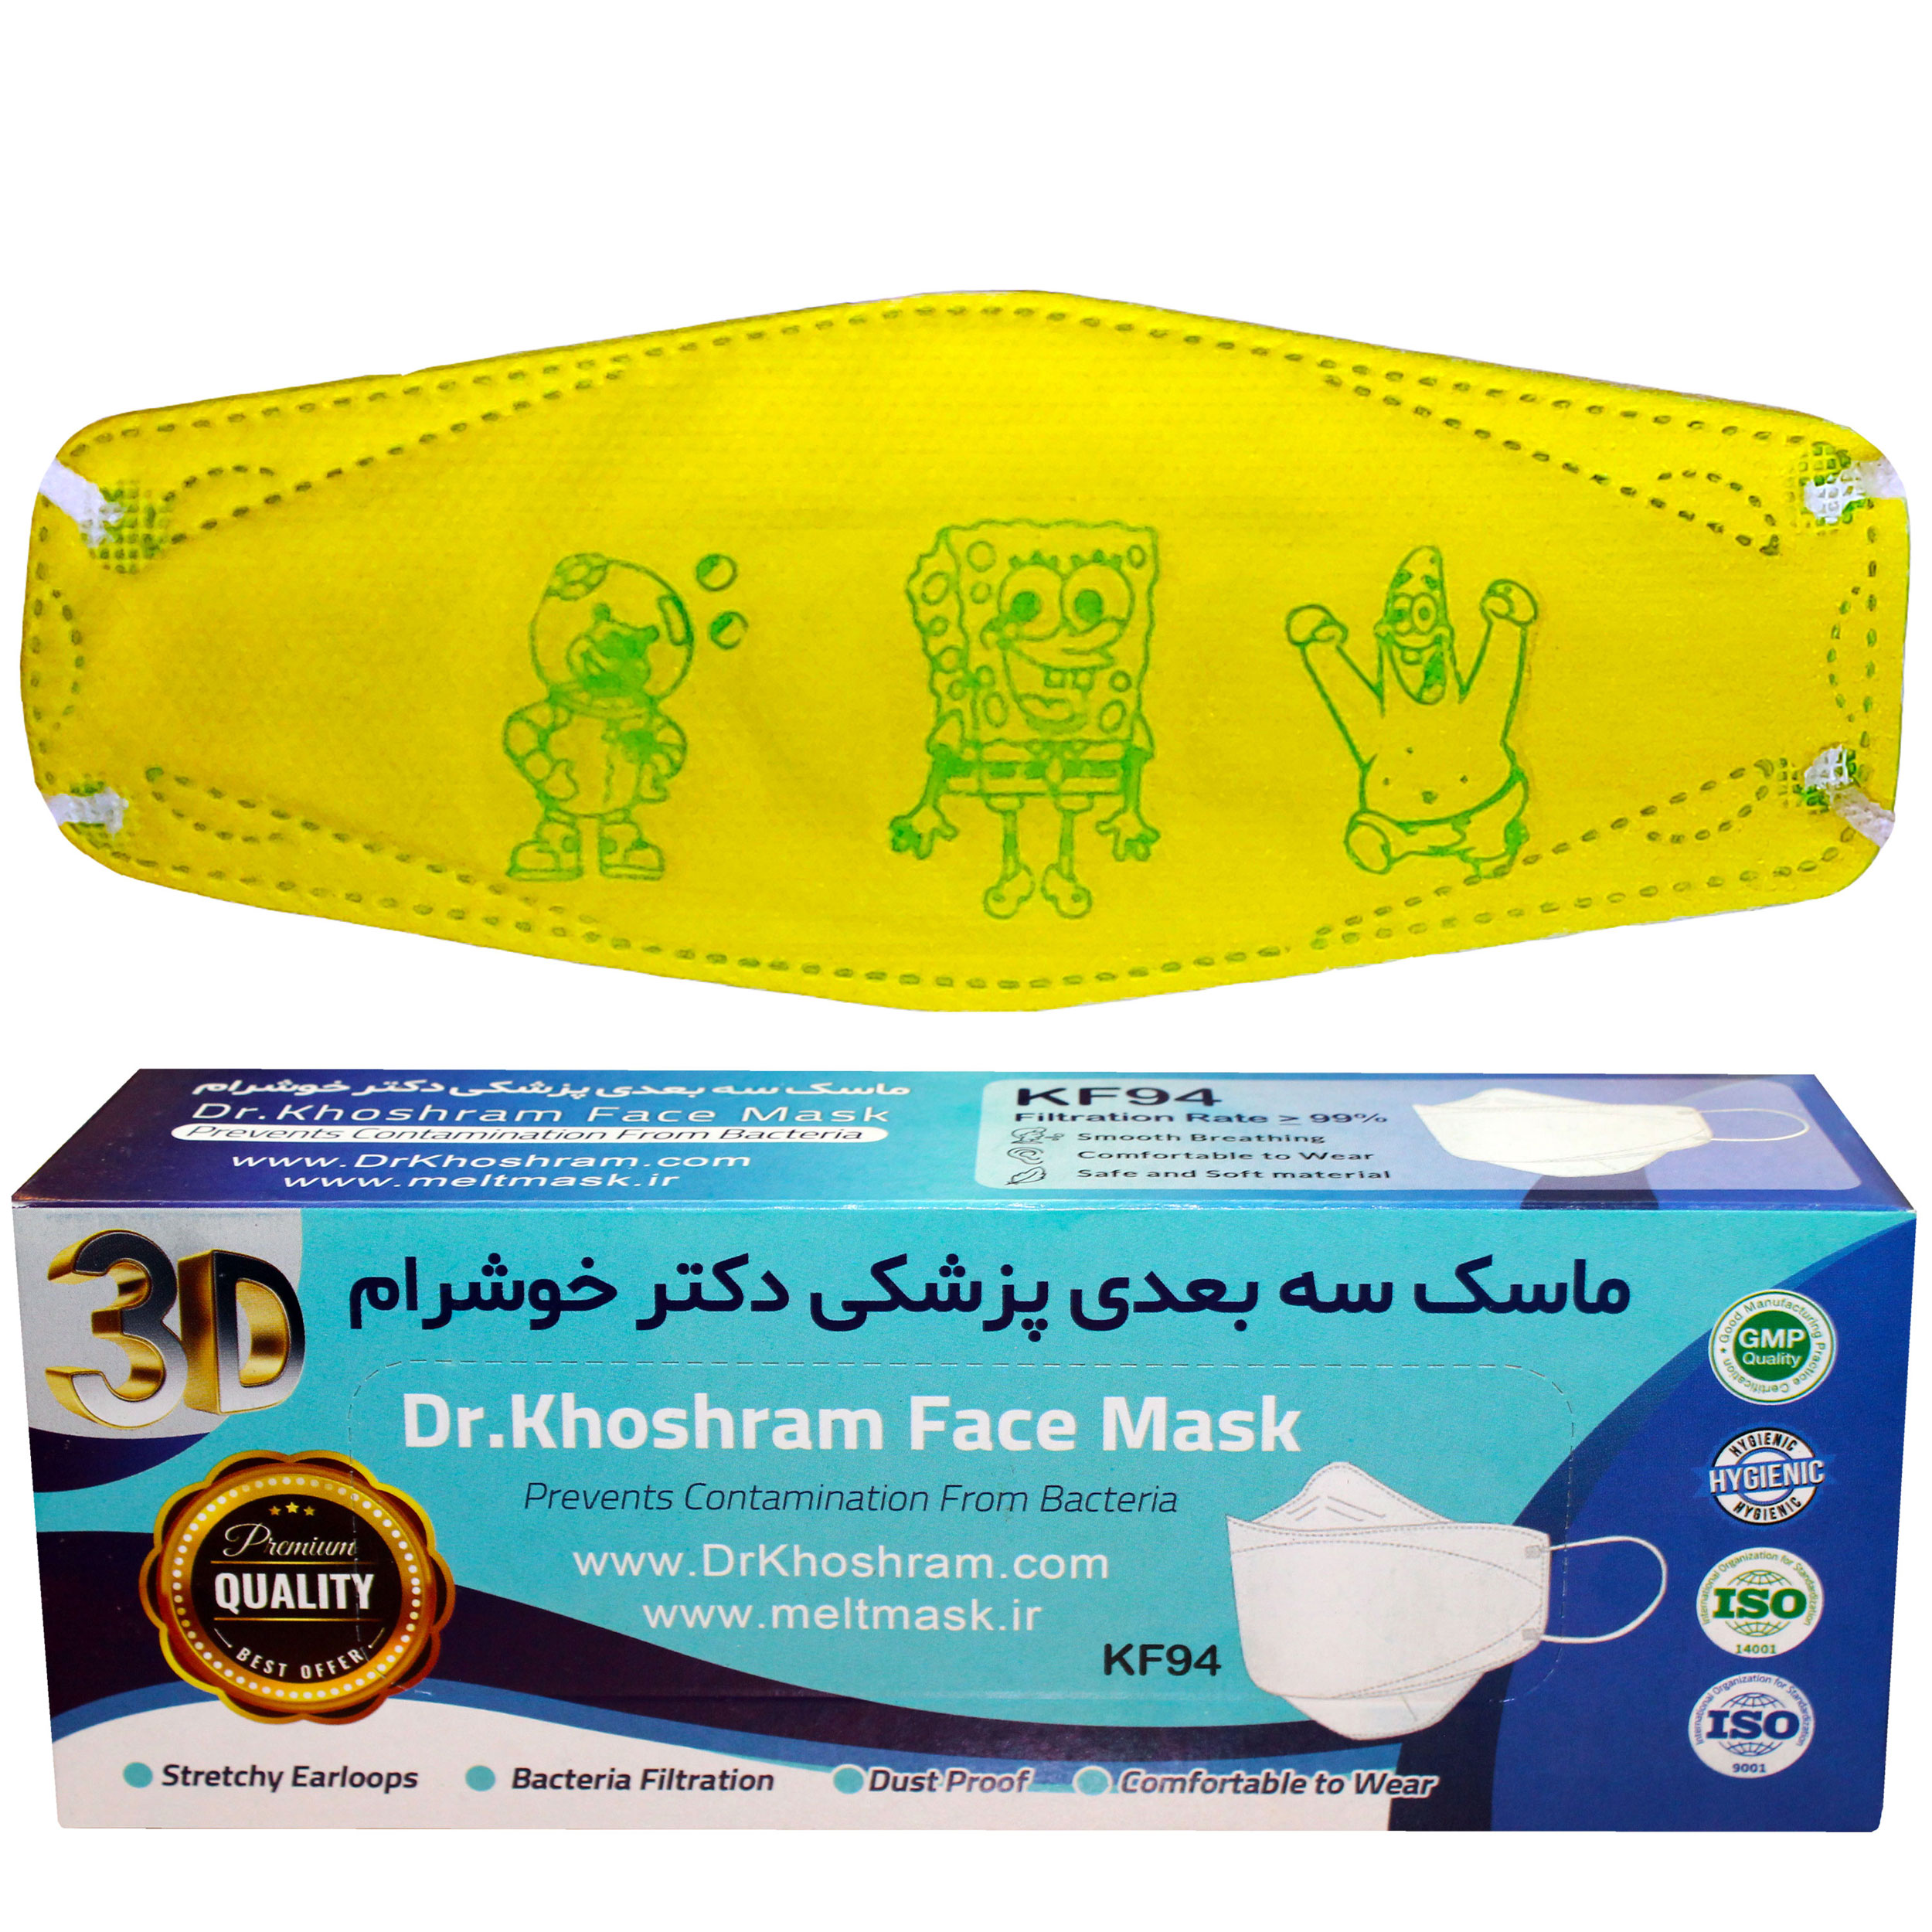 ماسک تنفسی دکترخوشرام مدل سه بعدی 02 بسته 20 عددی